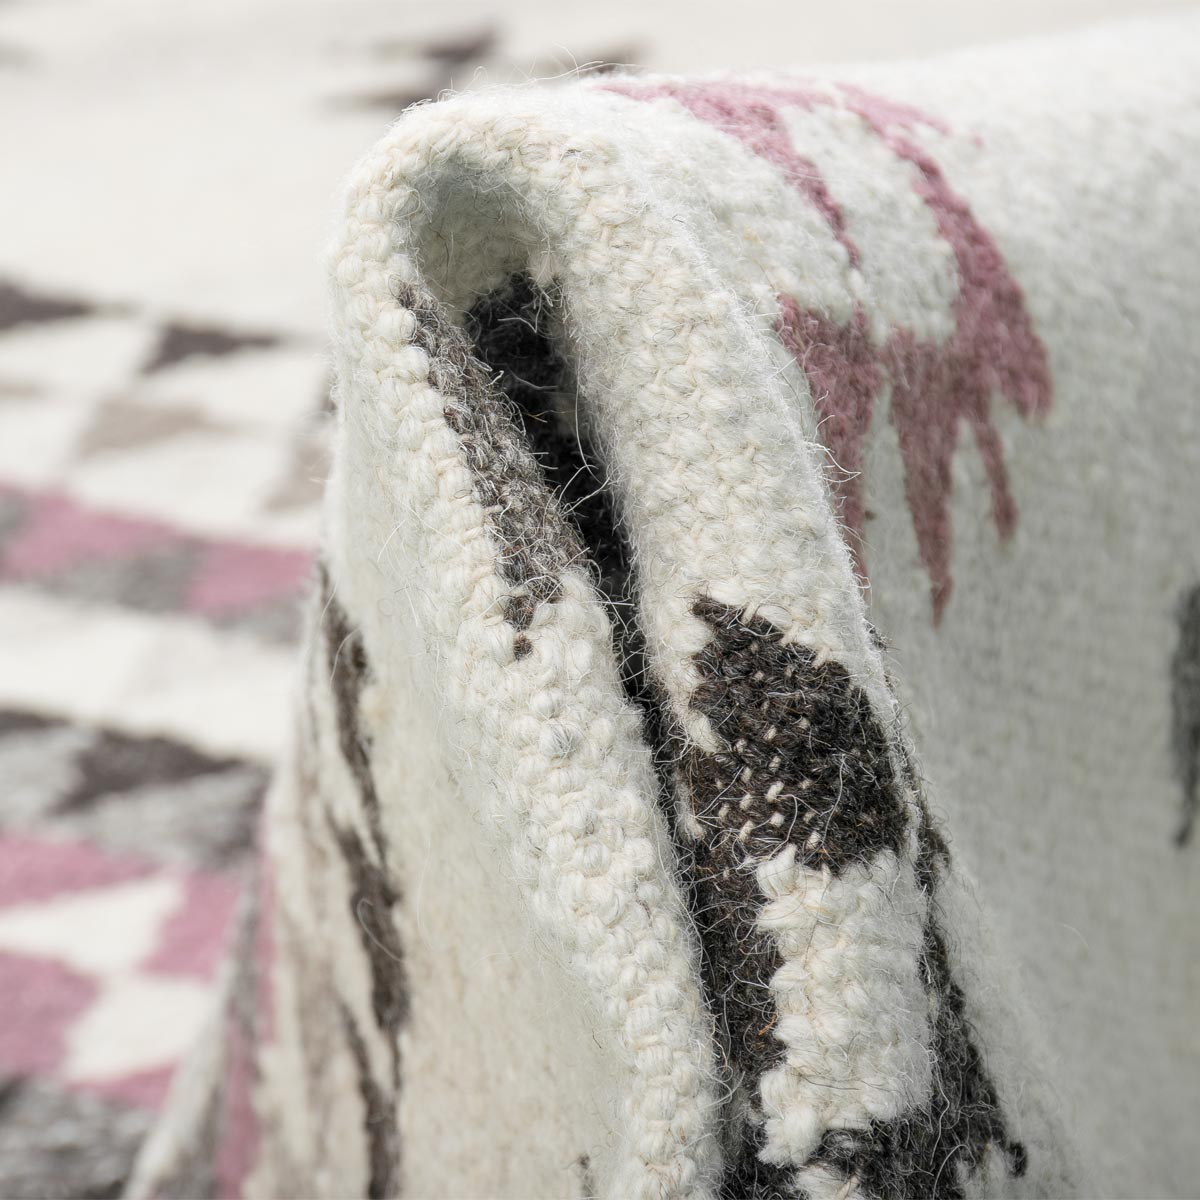 שטיח קילים סקנדינבי 08 לבן/ורוד ראנר עם פרנזים | השטיח האדום